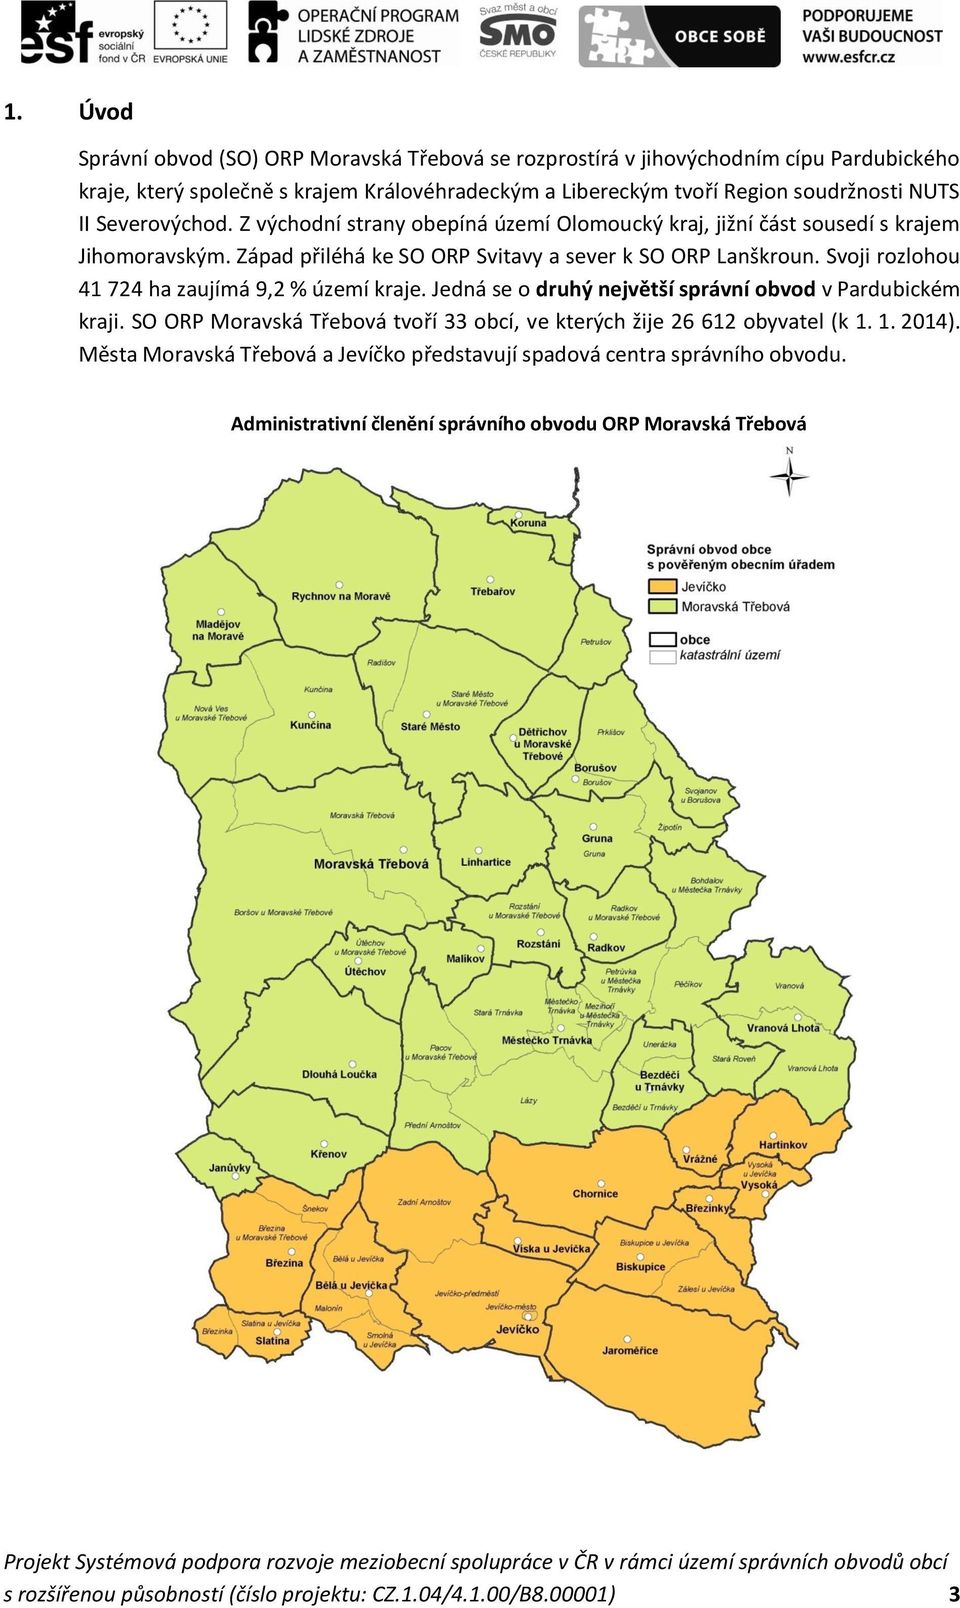 Svoji rozlohou 41 724 ha zaujímá 9,2 % území kraje. Jedná se o druhý největší správní obvod v Pardubickém kraji. SO ORP Moravská Třebová tvoří 33 obcí, ve kterých žije 26 612 obyvatel (k 1.